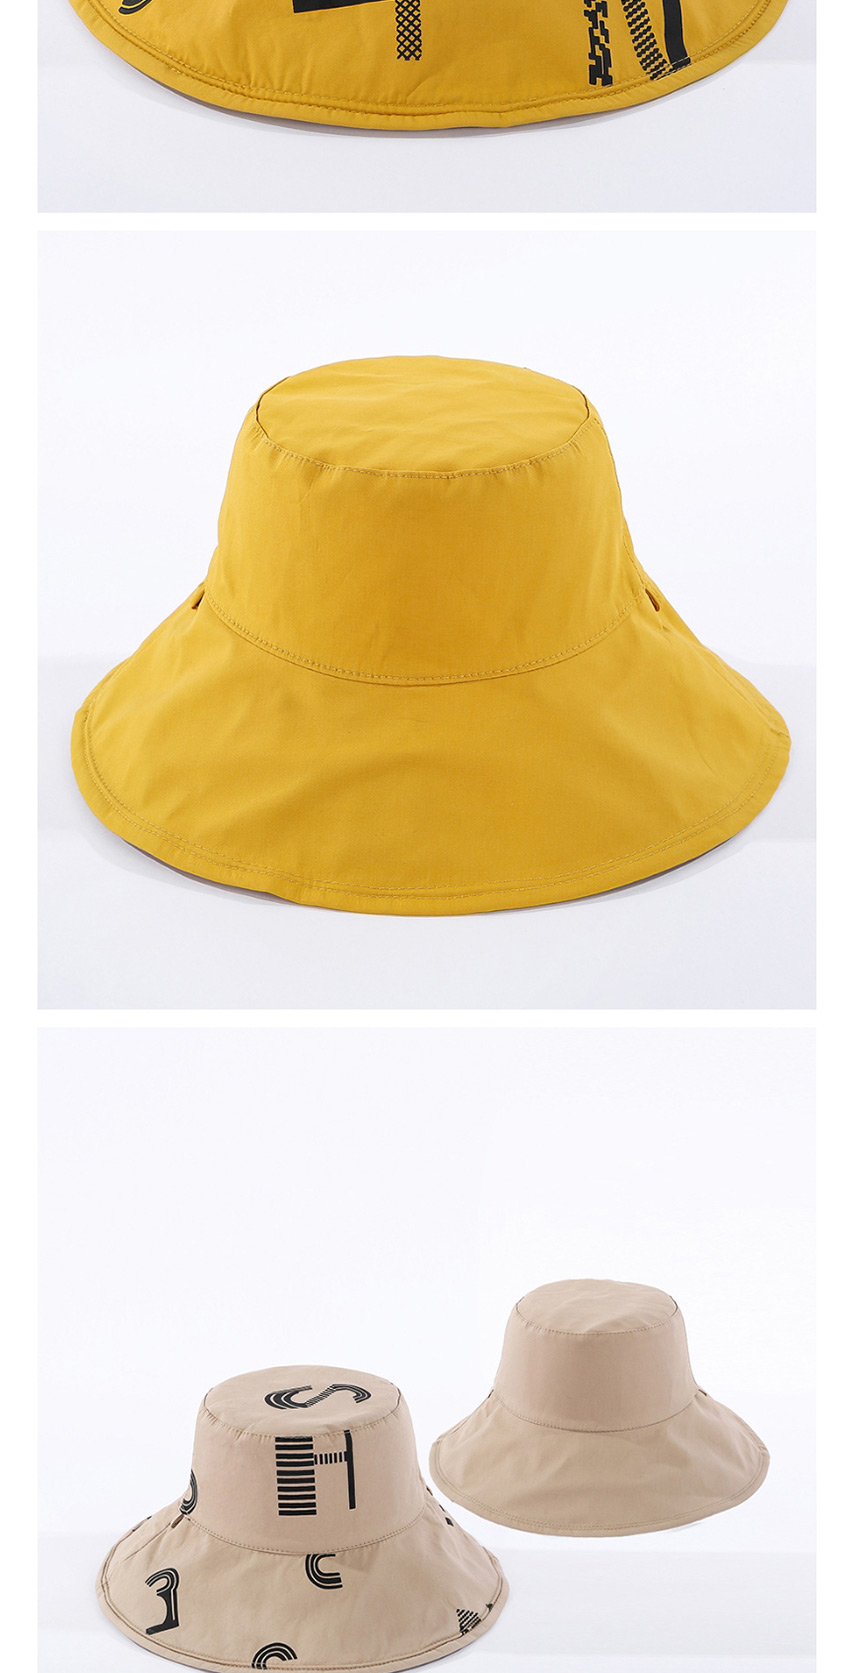 Fashion Blue Letter Reversible Sun Hat,Sun Hats